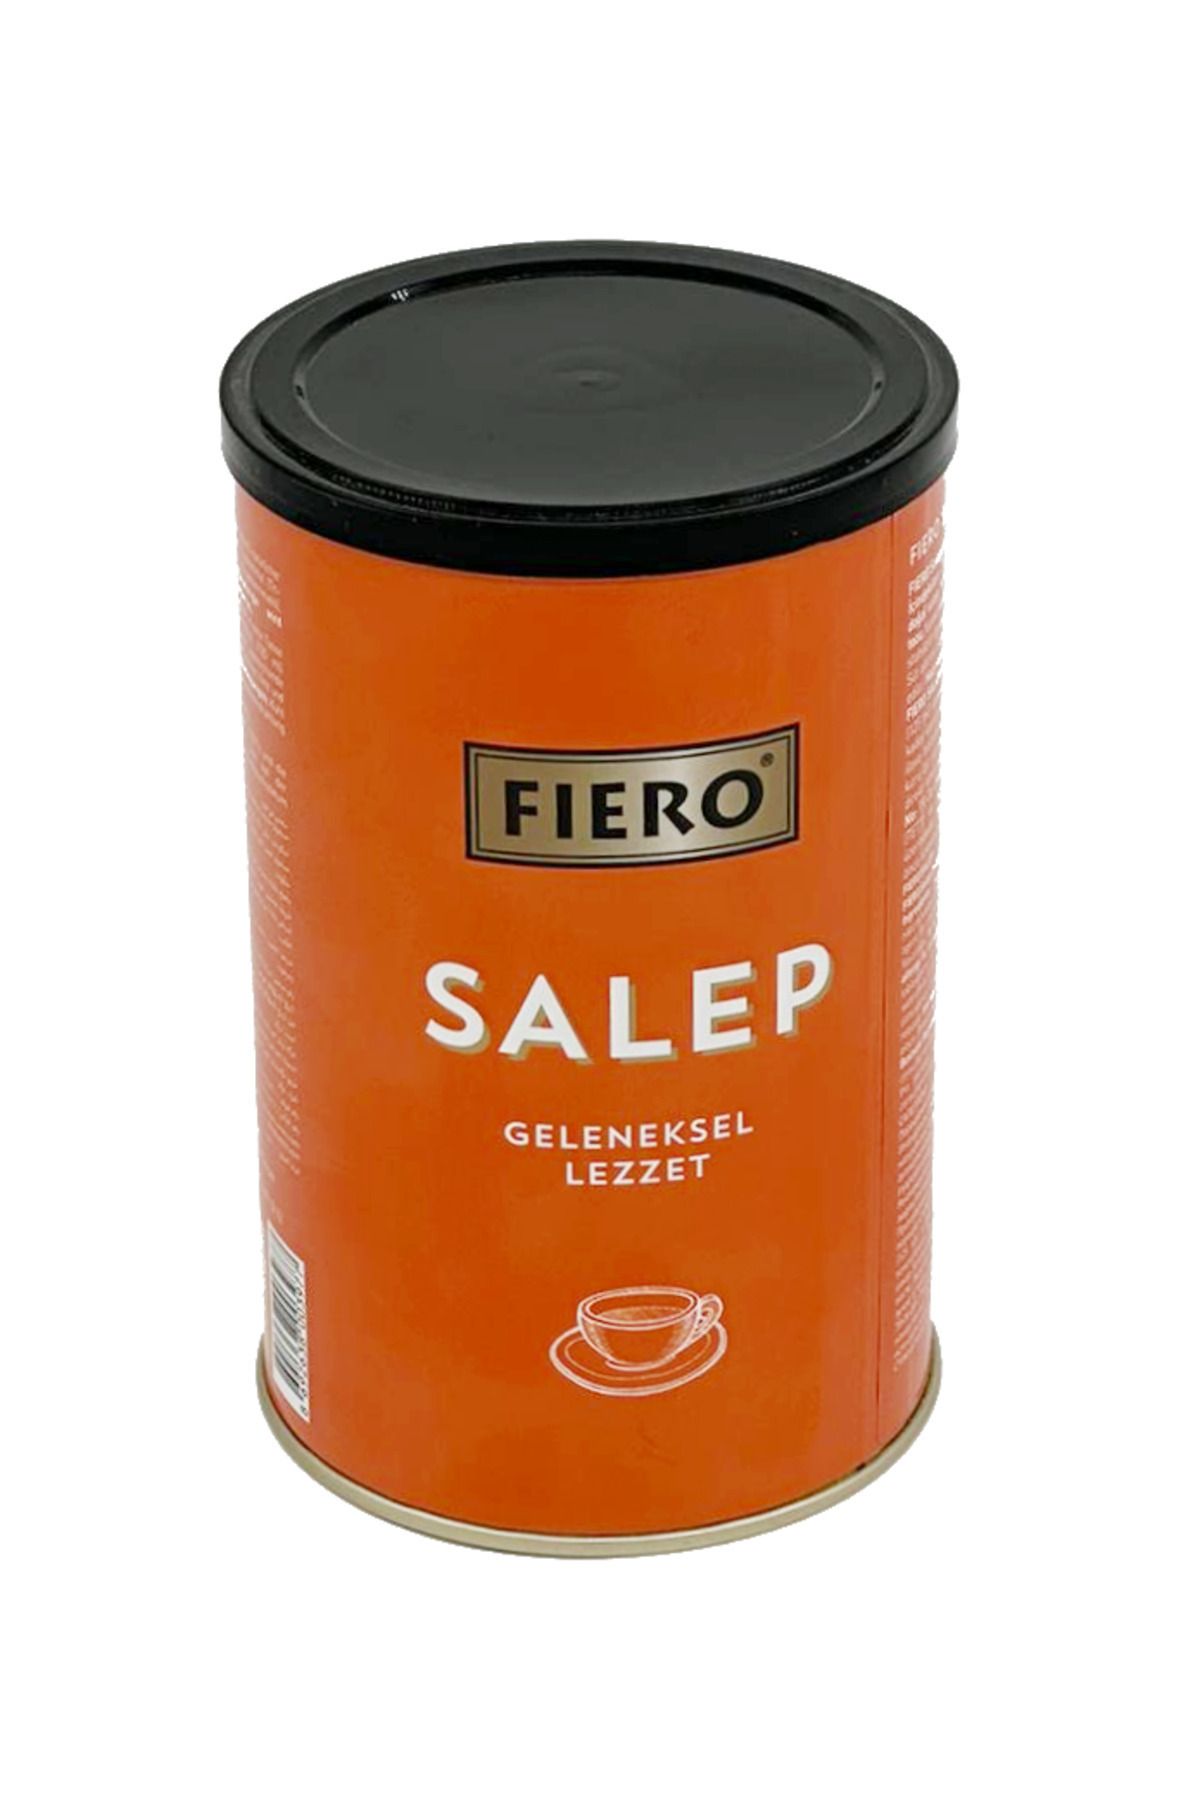 Fıero Fiero Salep 500 Gr.